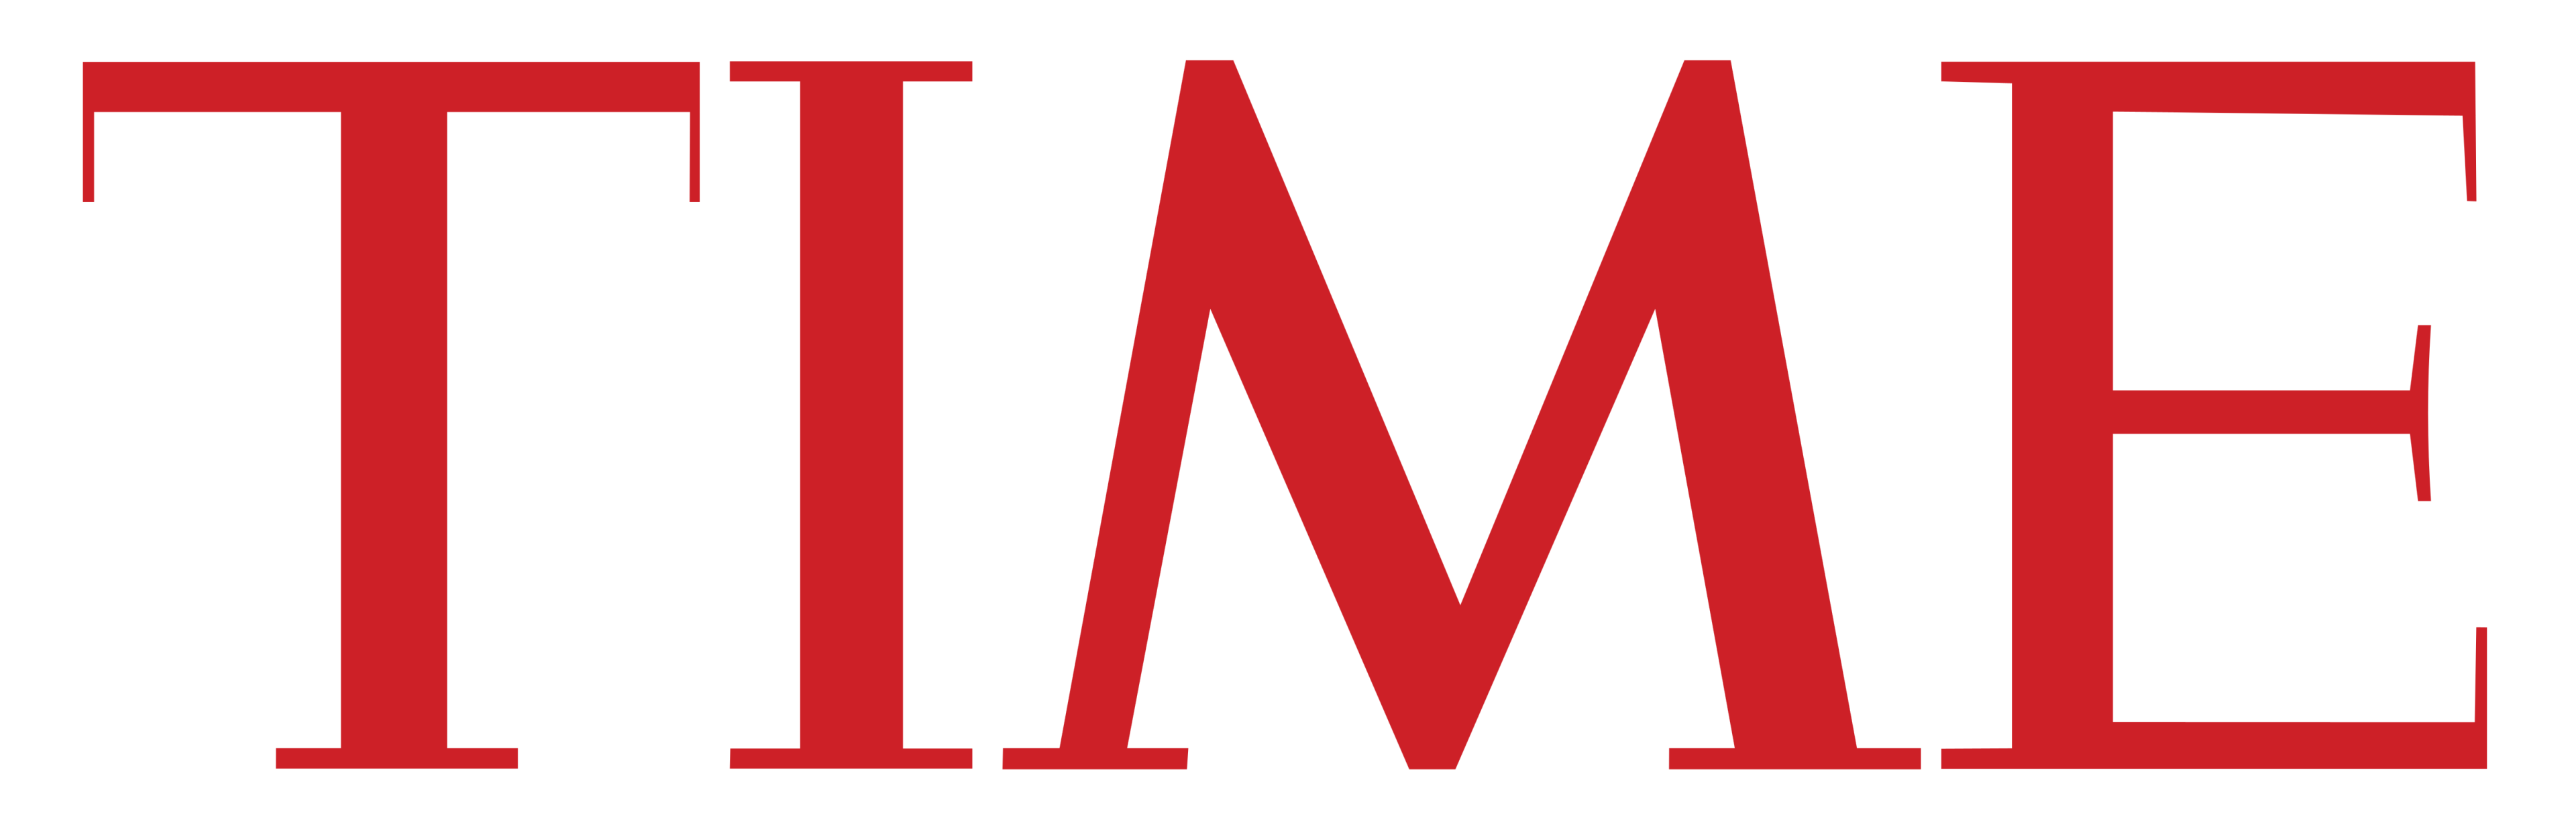 Logotipo de la revista tiempo